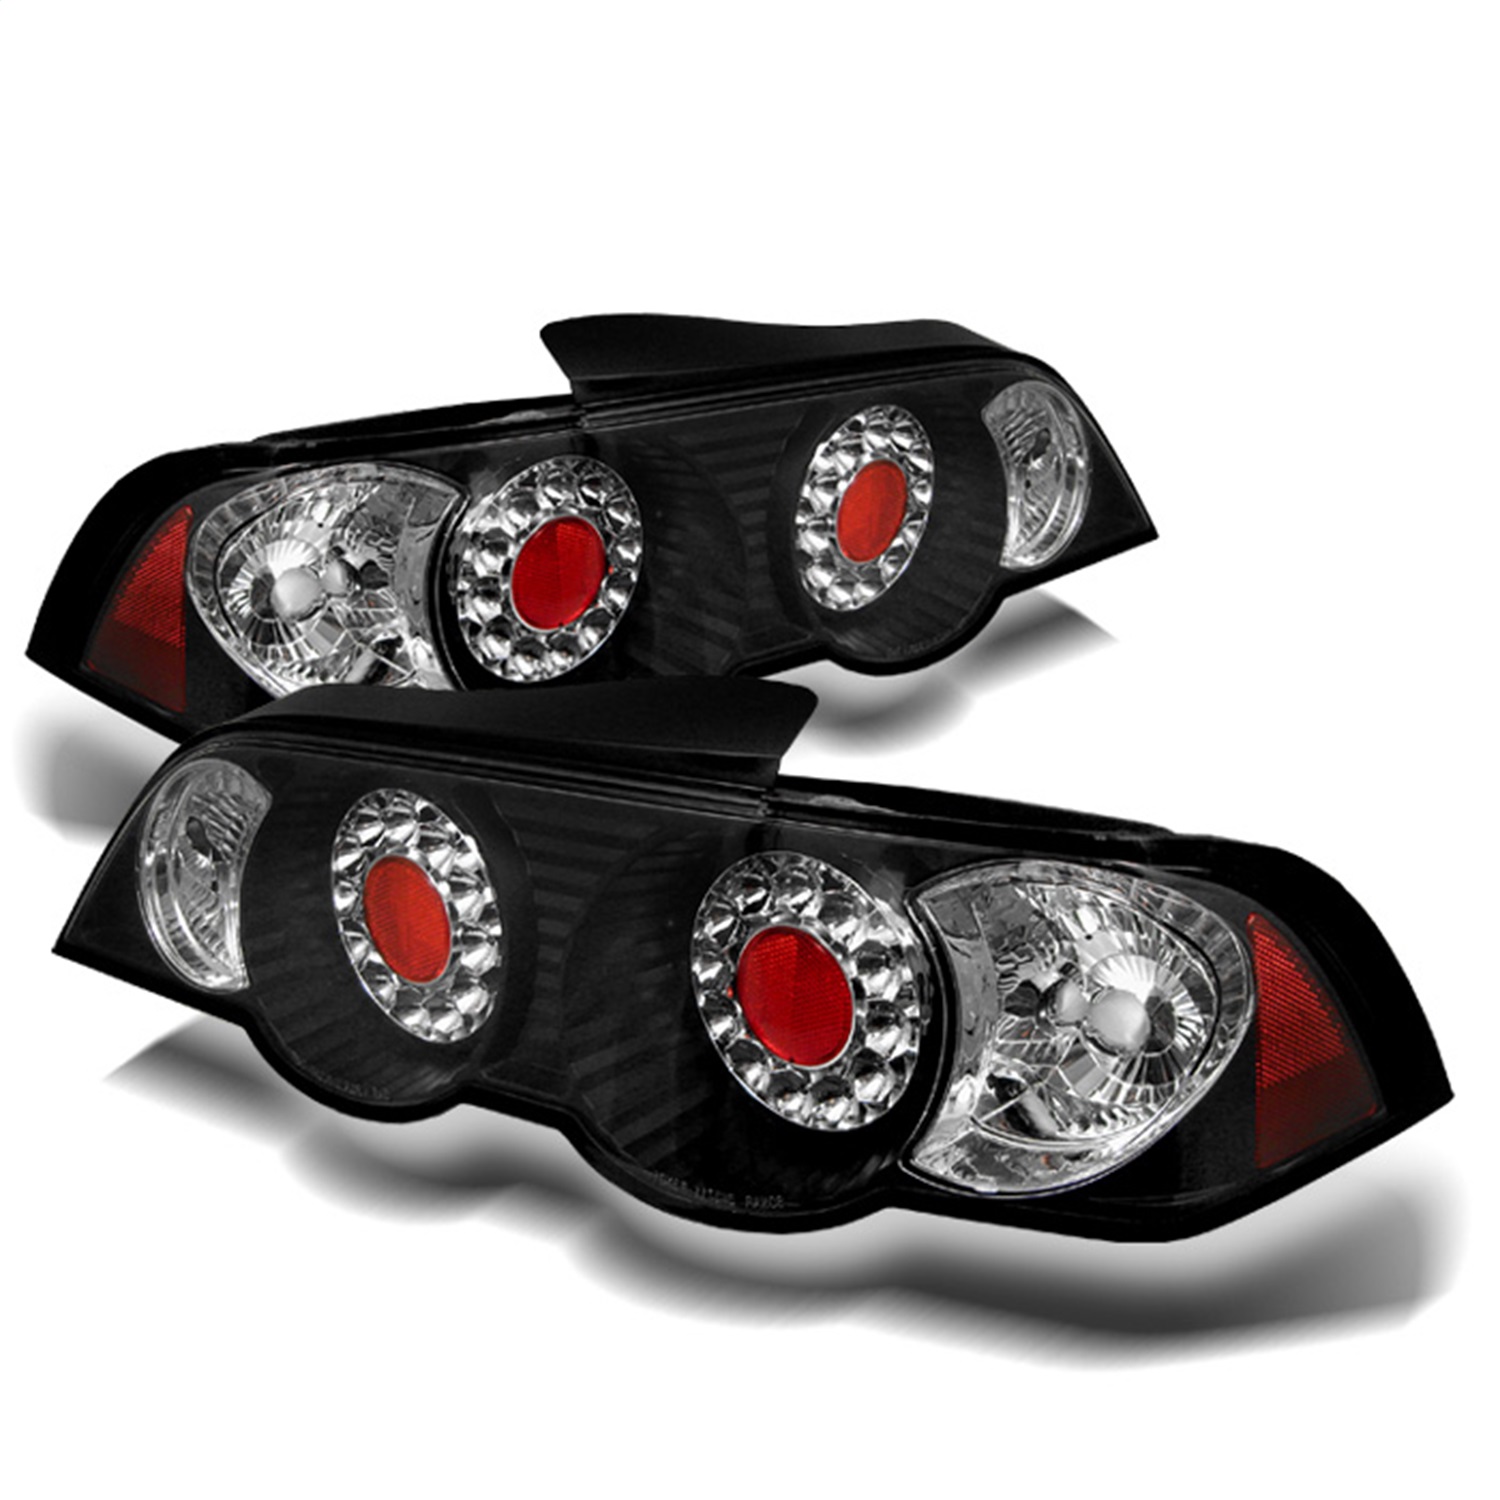 Spyder Auto 5000361 LED Tail Lights Fits 02-04 RSX